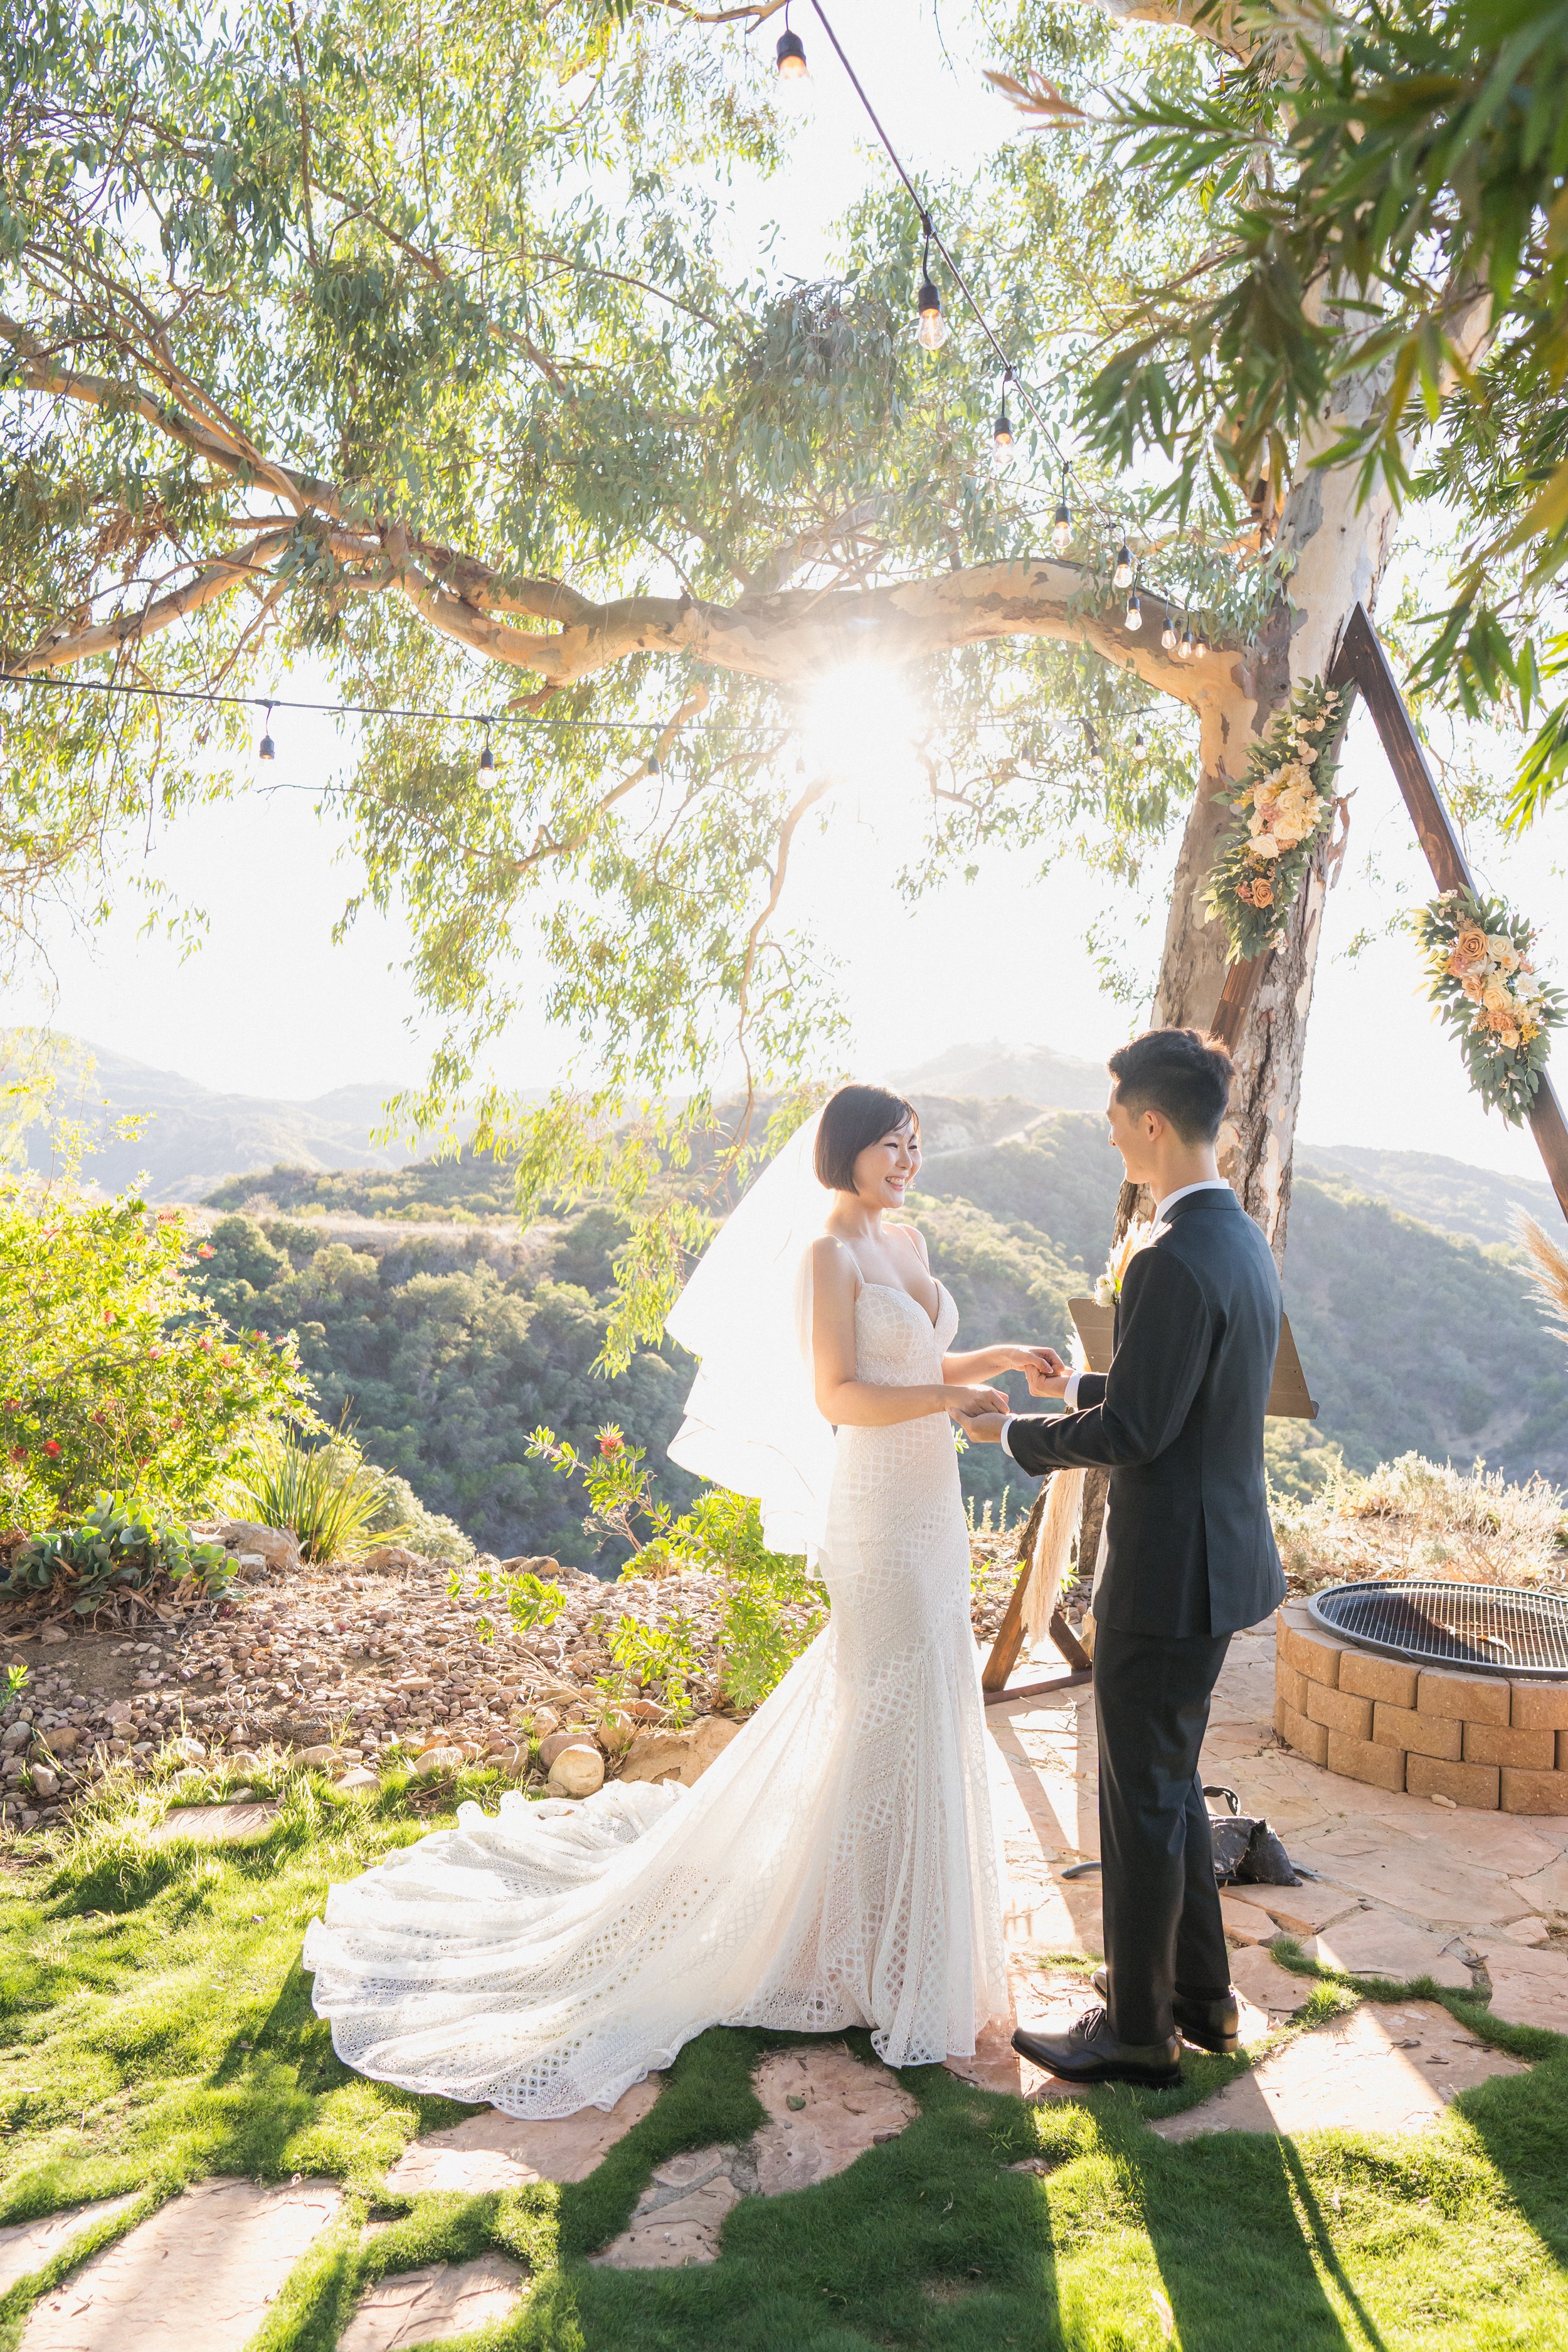 intimate wedding elopement photography los angeles topanga canyon diy wedding backyard wedding